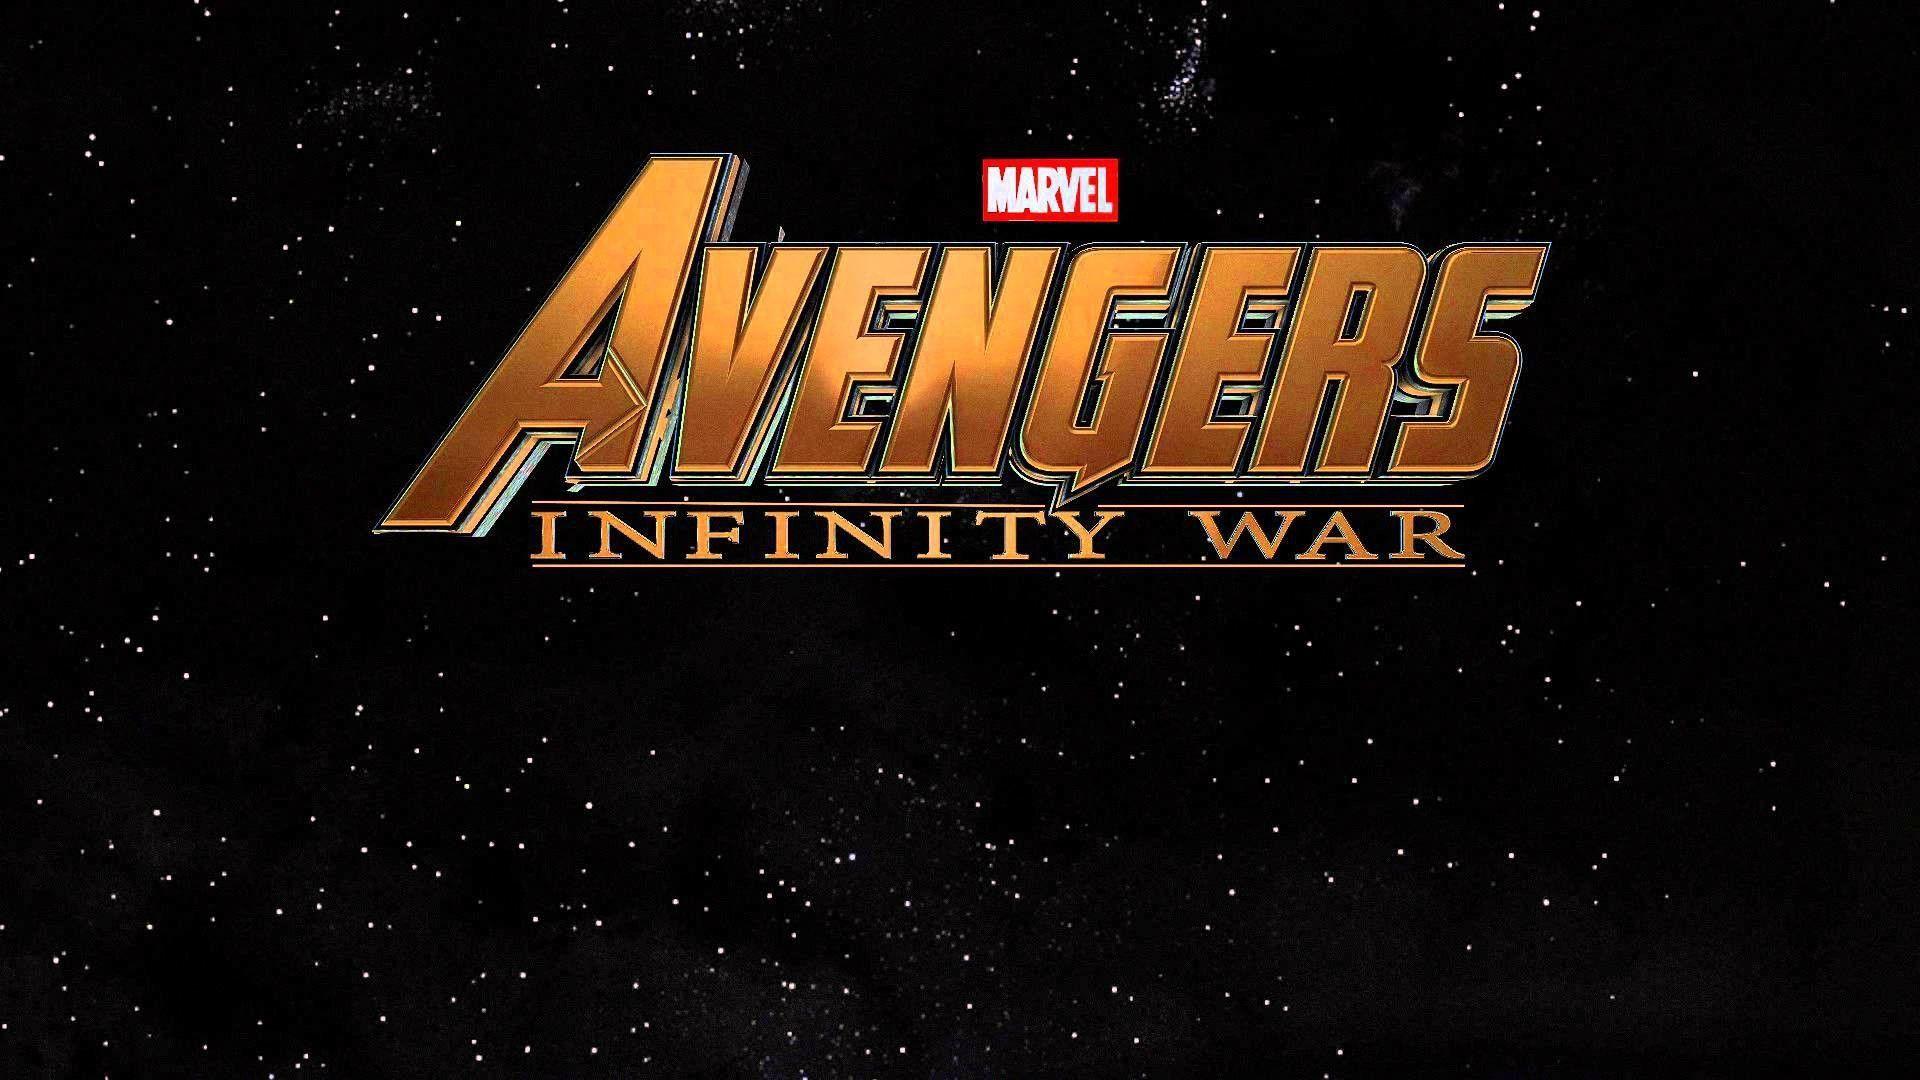 Marvel Avengers Infinity War Logo Wallpaper